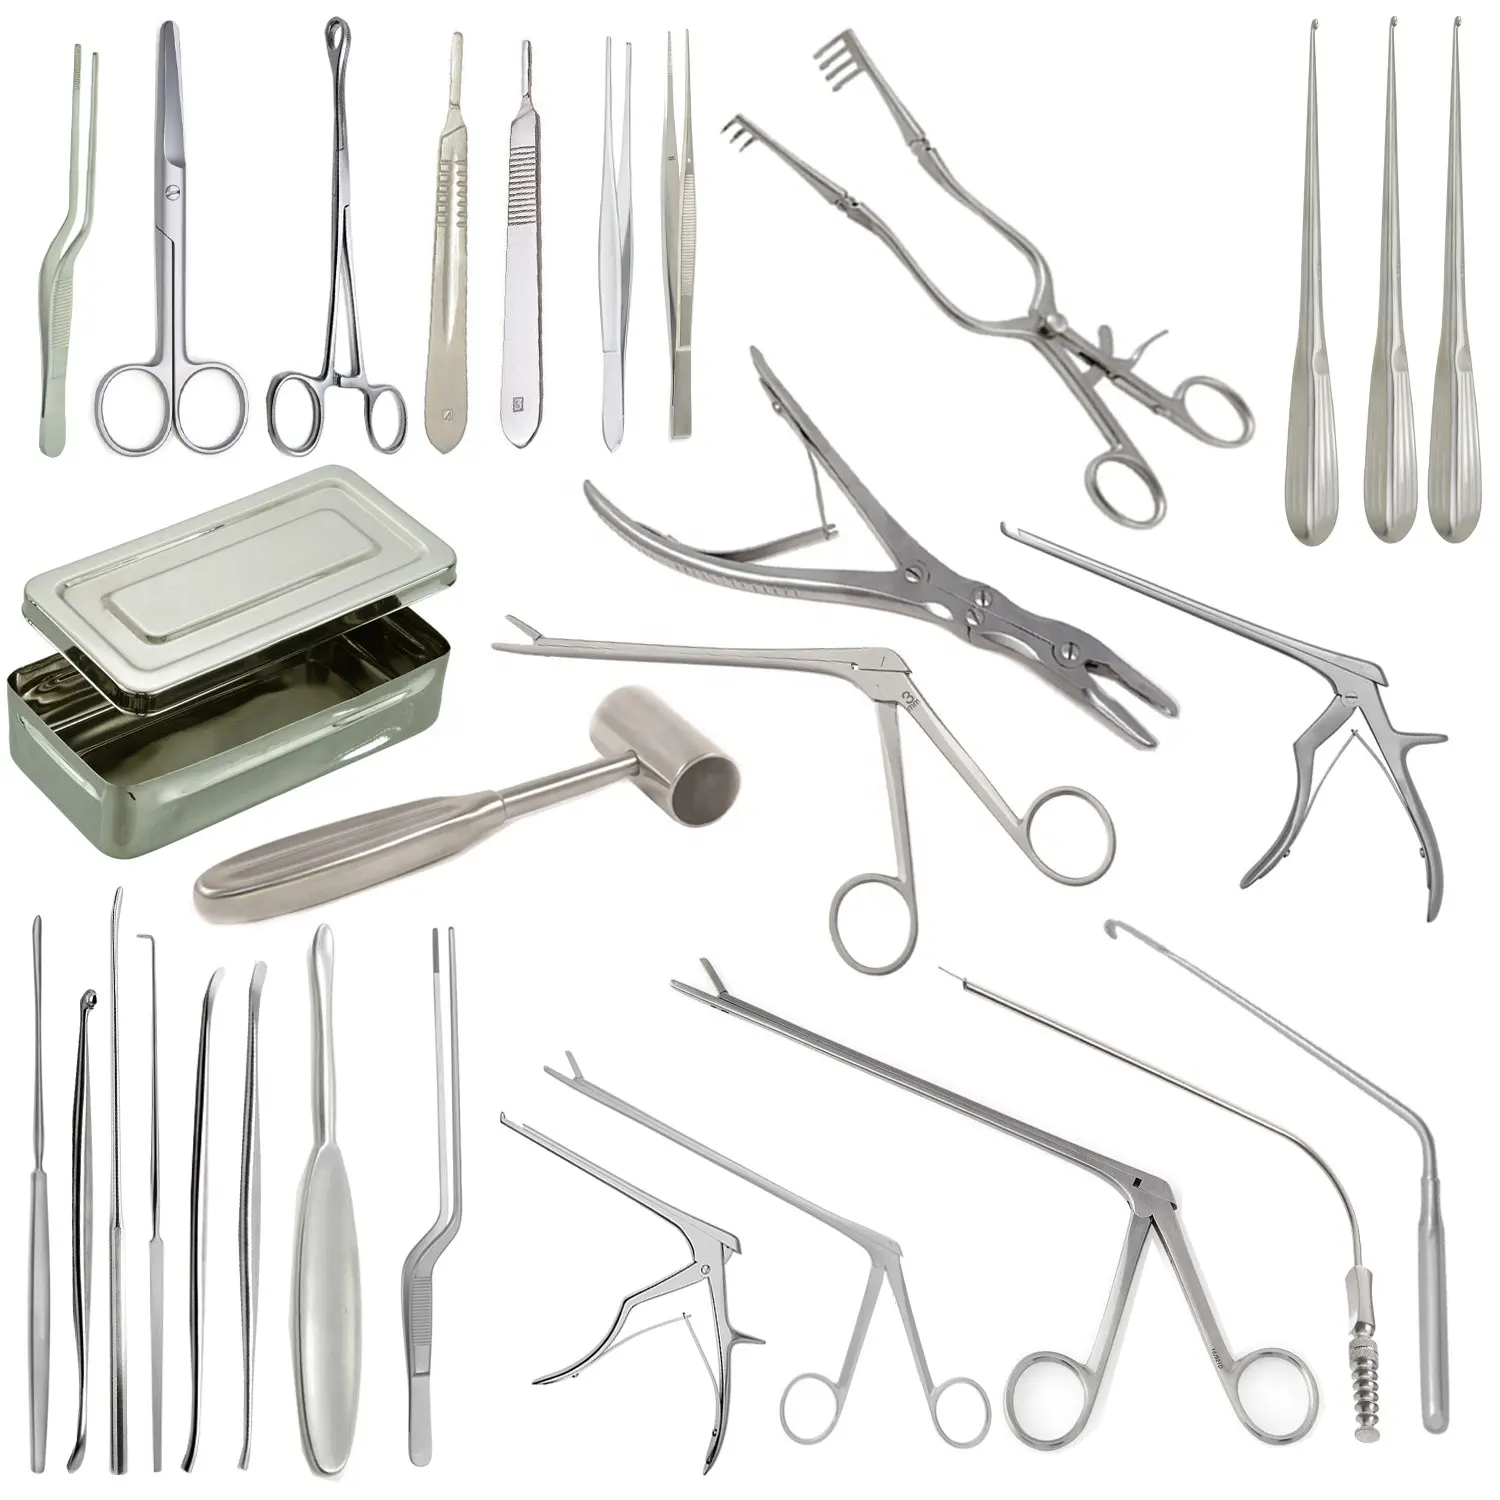 Strumenti per laminectomia Neuro Set di 35 pezzi per chirurgia laminectomia, strumenti per neurochirurgia Neuro Set strumenti chirurgici